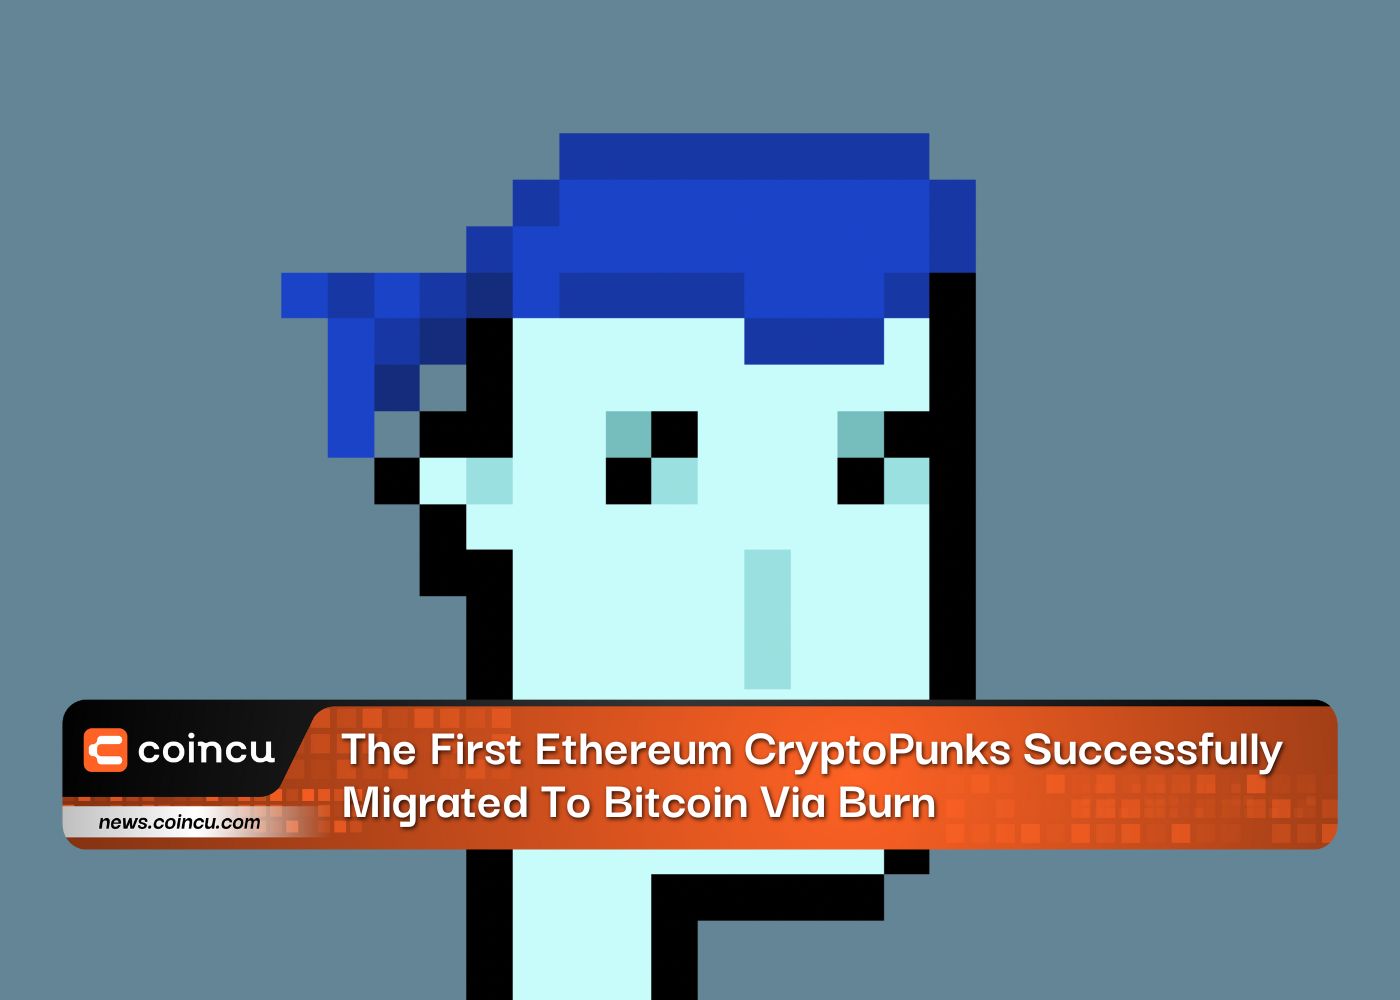 Die ersten Ethereum-CryptoPunks wurden über Burn erfolgreich auf Bitcoin migriert